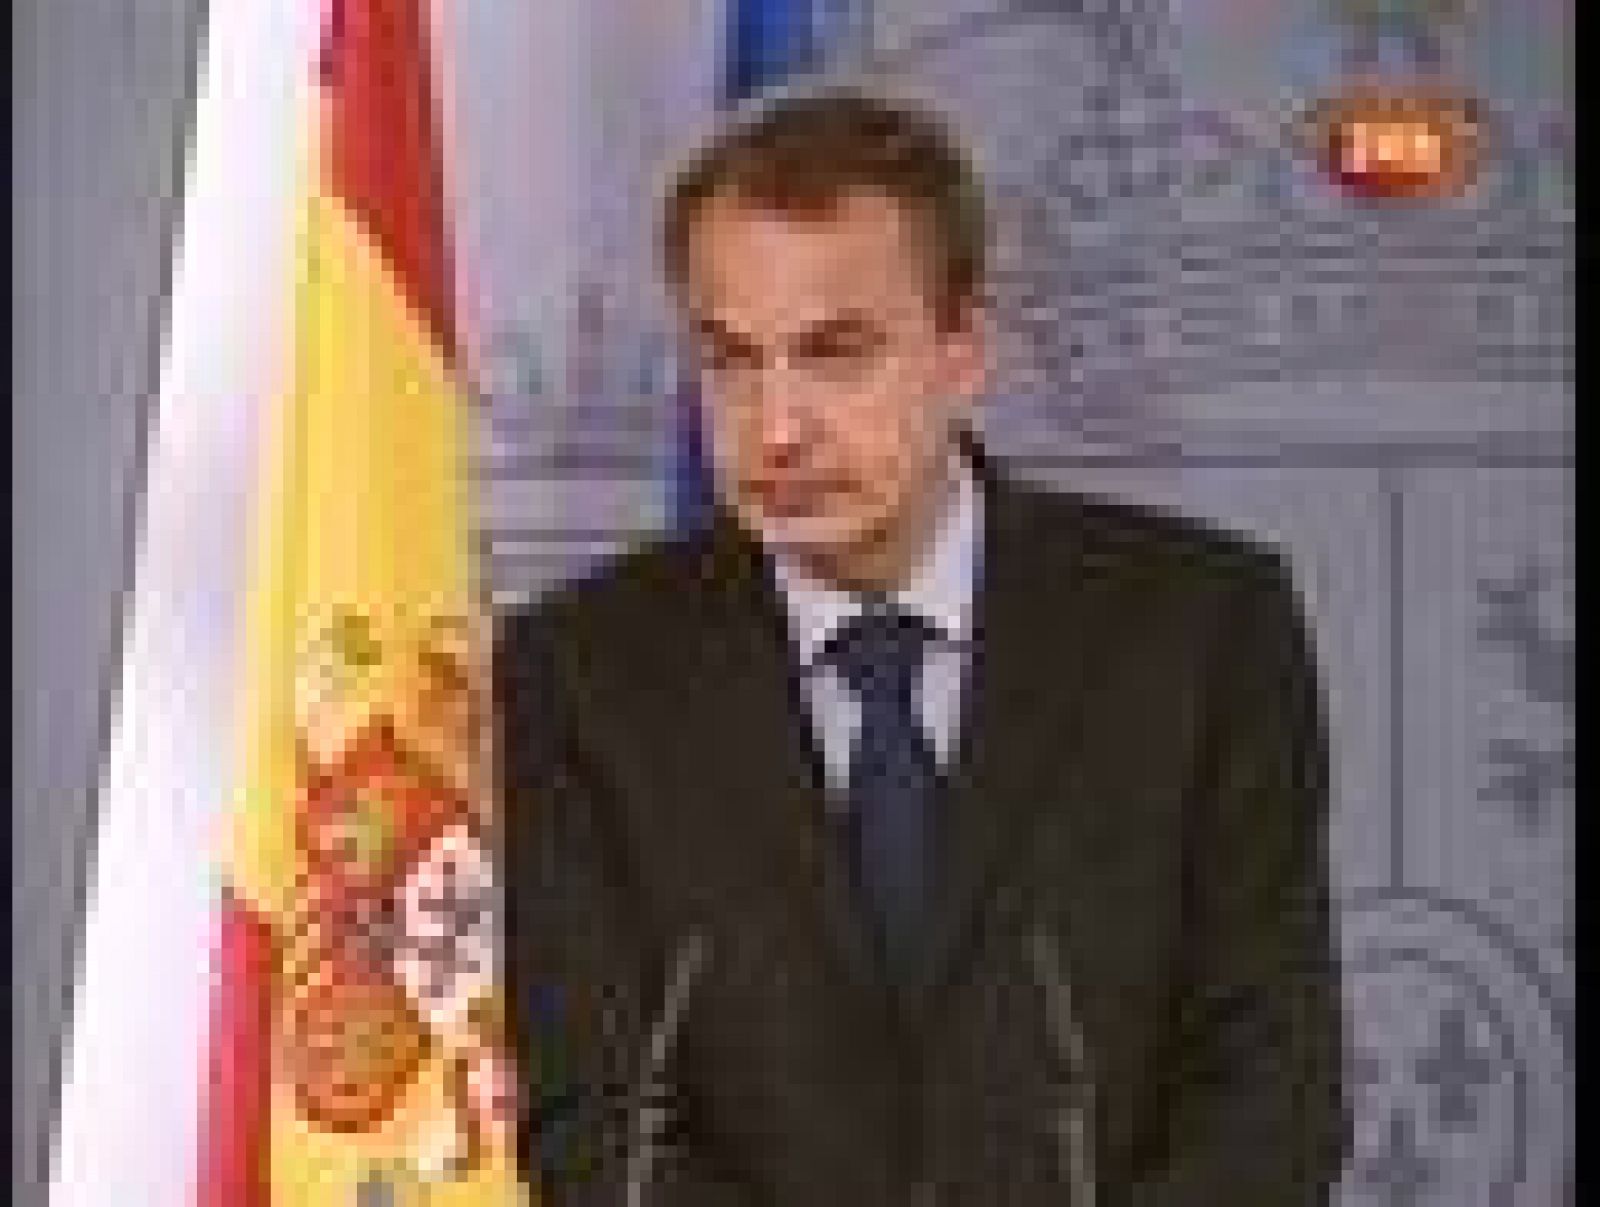  Zapatero asegura que "no habrá más oportunidades" para ETA